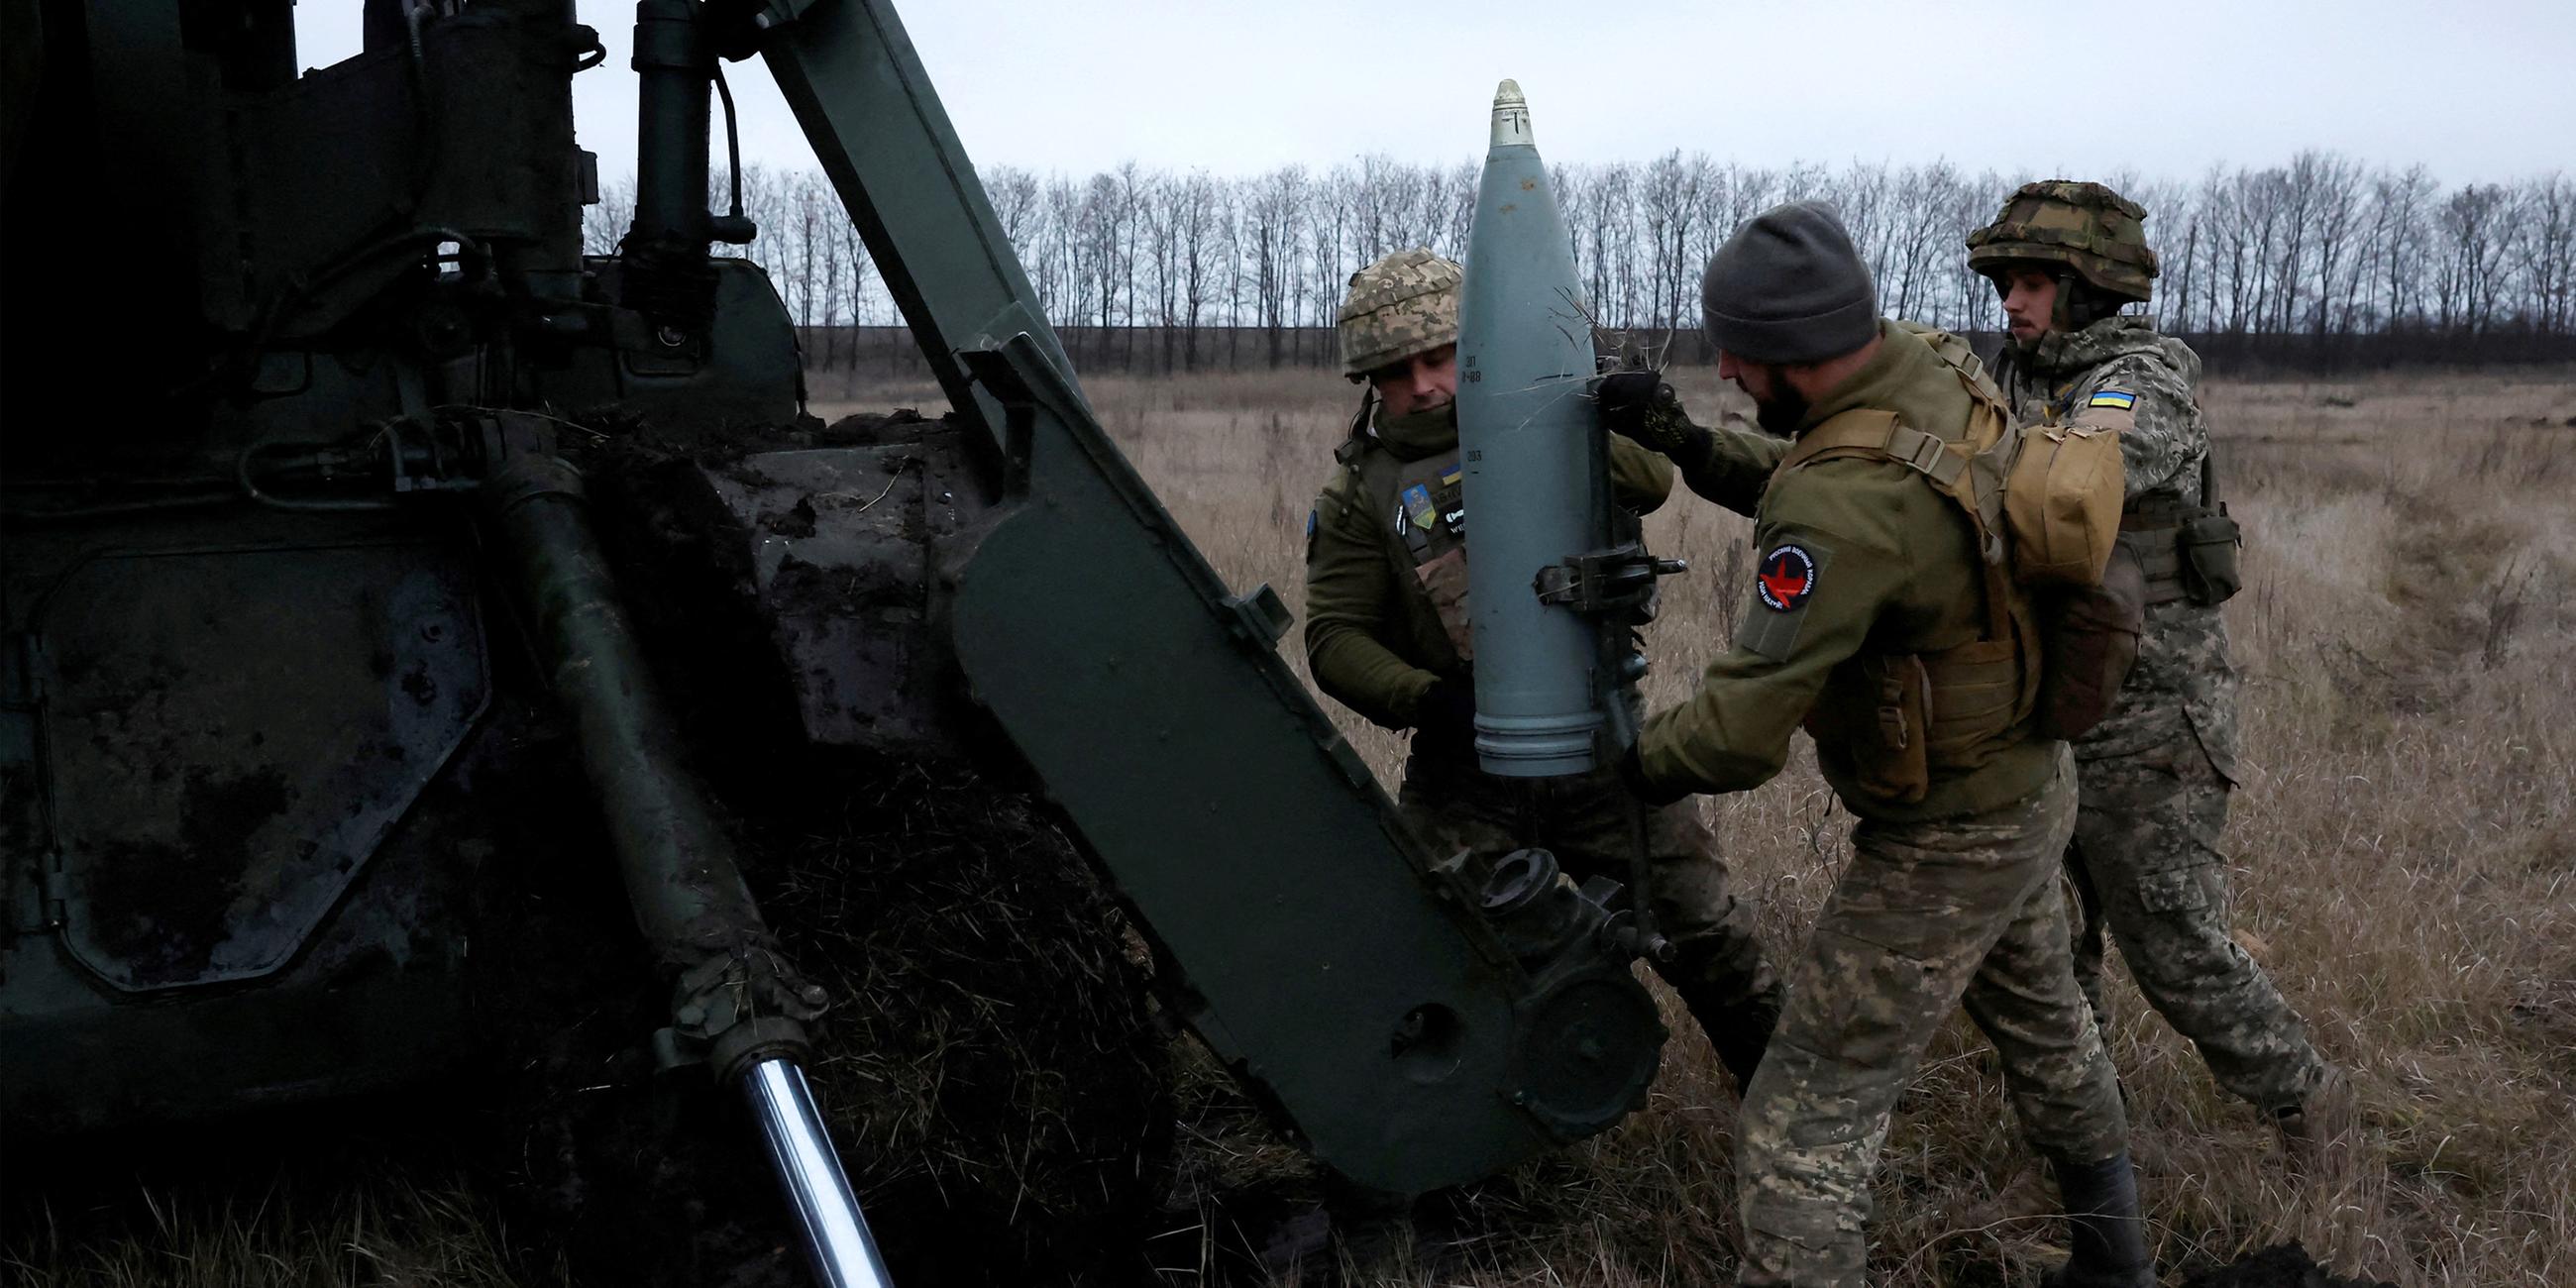 Ukrainische Soldaten laden ein Projektil zum Abfeuern aus einer Kanone.